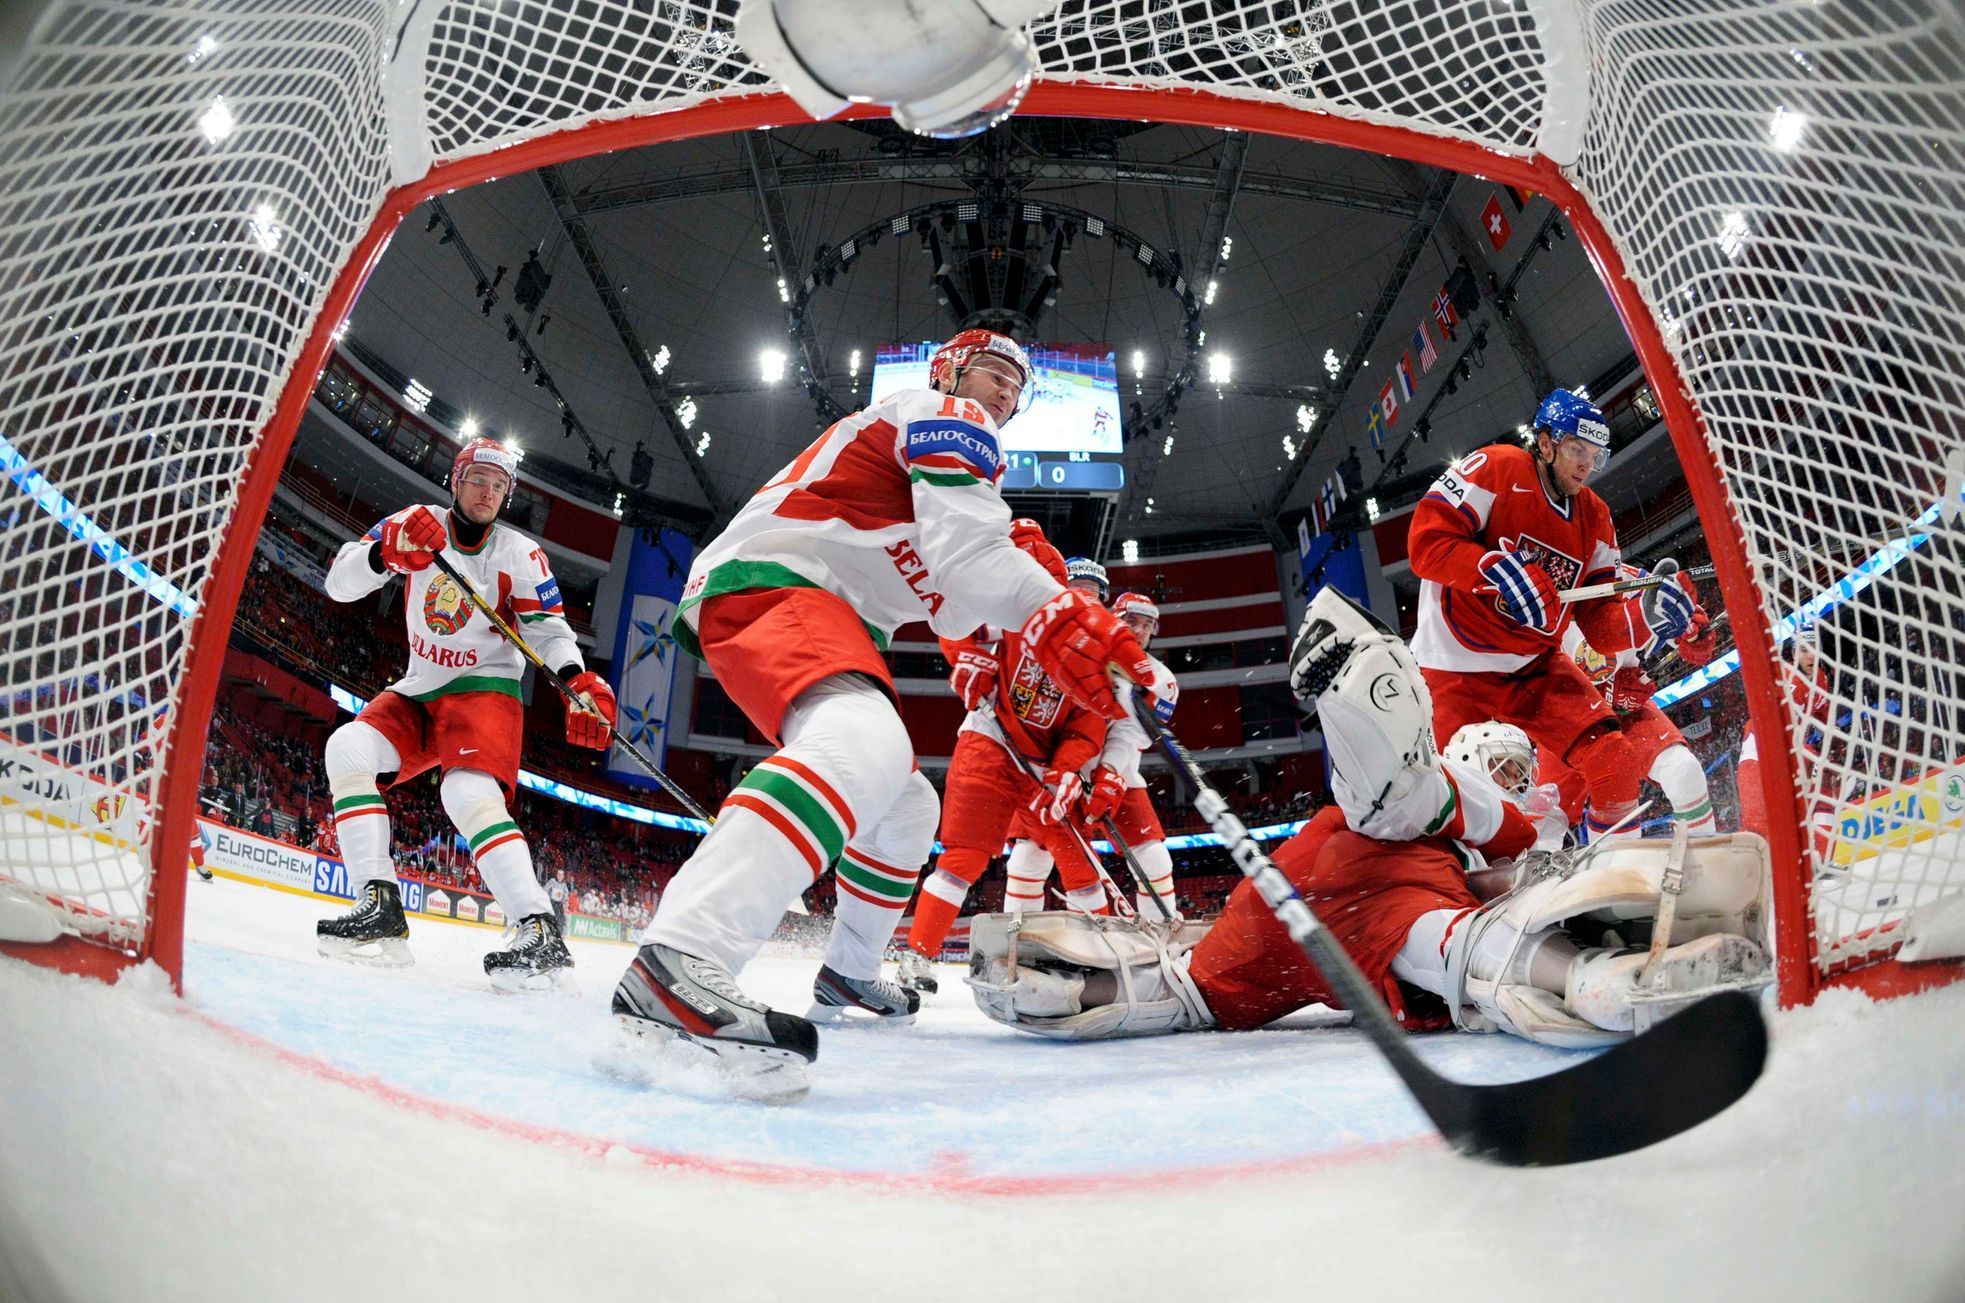 MS v hokeji 2013, Česko - Bělorusko: Martin Hanzal - Dmitrij Meleško a Vitalij Bělinskij